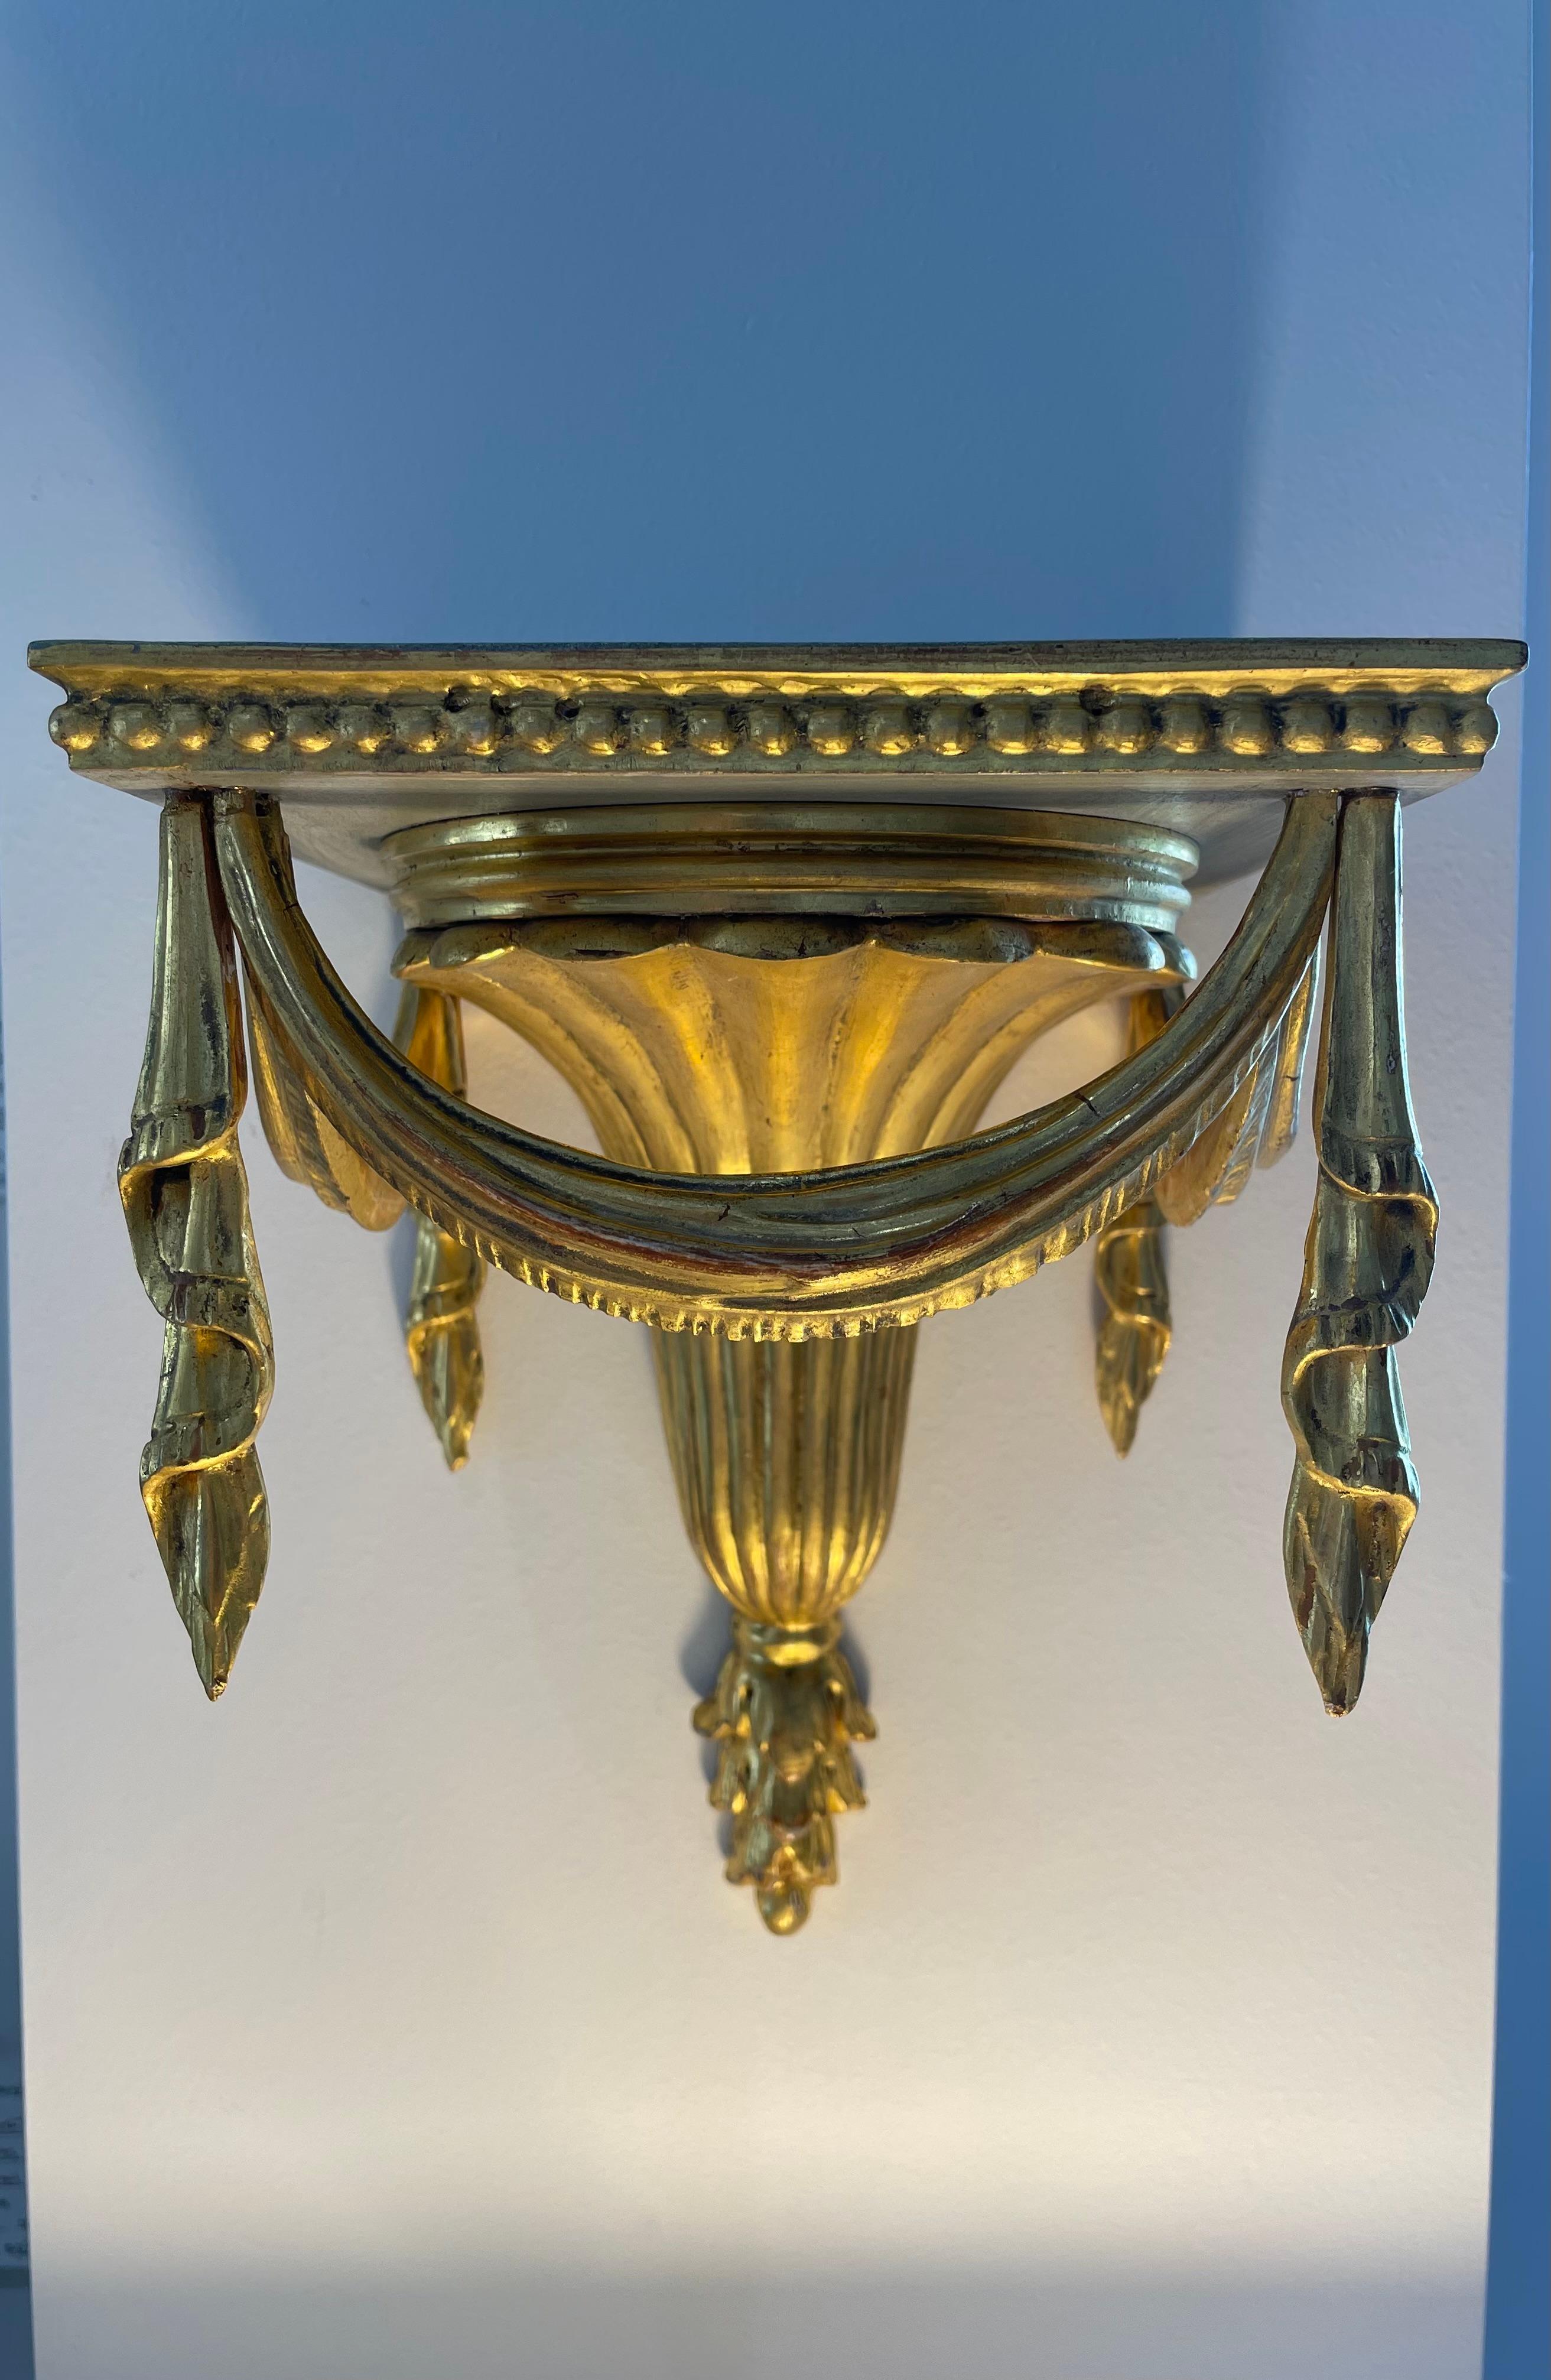 Cet ensemble élégant et chic de consoles murales italiennes de style Regency, sculptées à la main, date des années 1920-1930.  Les pièces  sont dorés, et le dessus et le dessous des supports sont peints en gris tourterelle foncé.  

